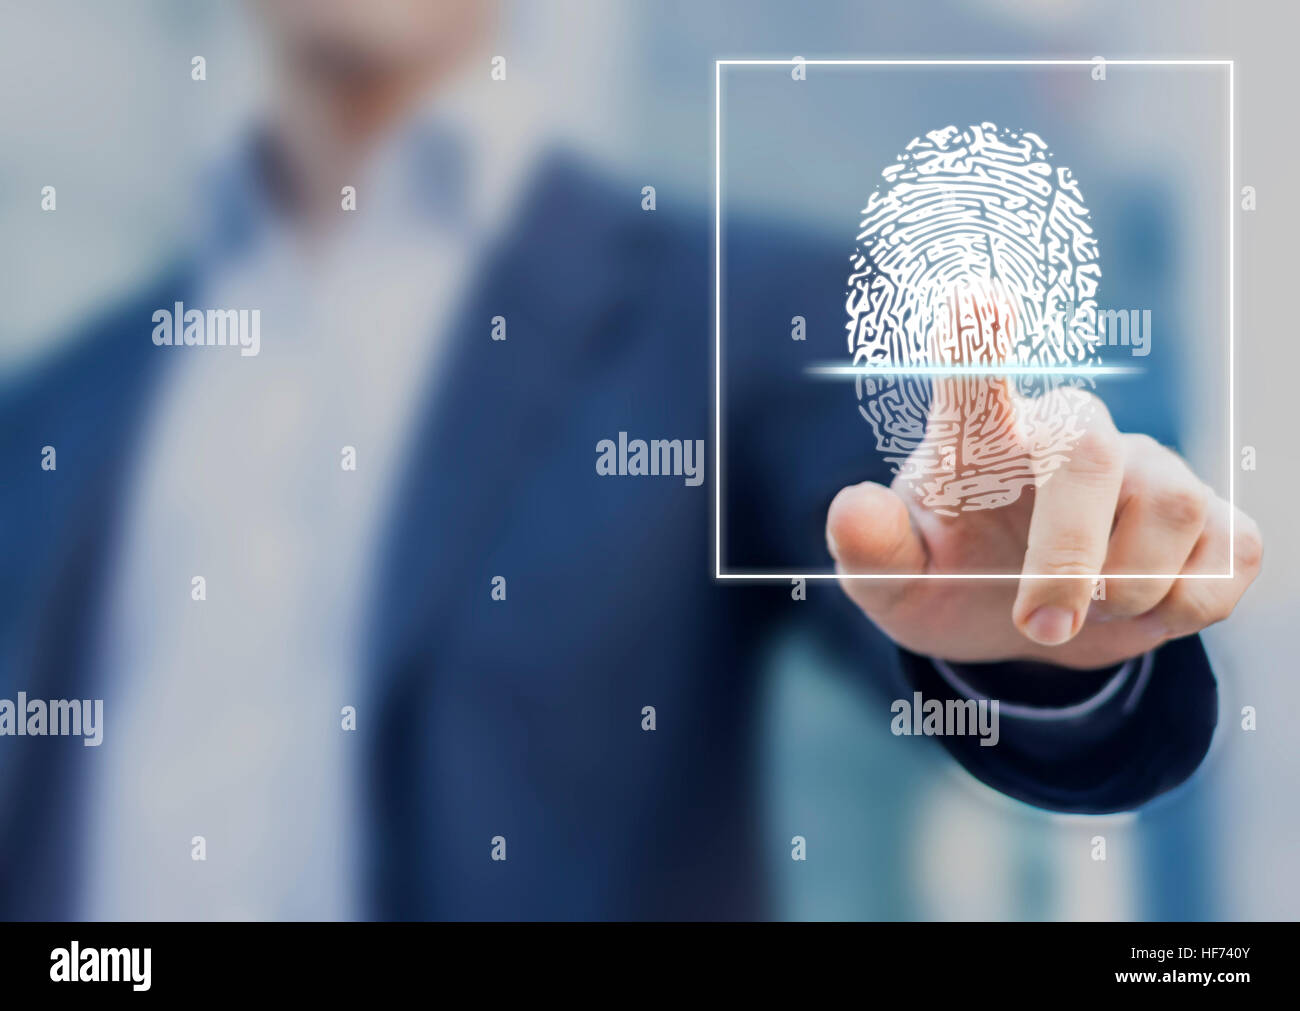 Fingerprint scan fournit la sécurité d'accès avec identification biométrique, personne touchant avec le doigt de l'écran en arrière-plan Banque D'Images